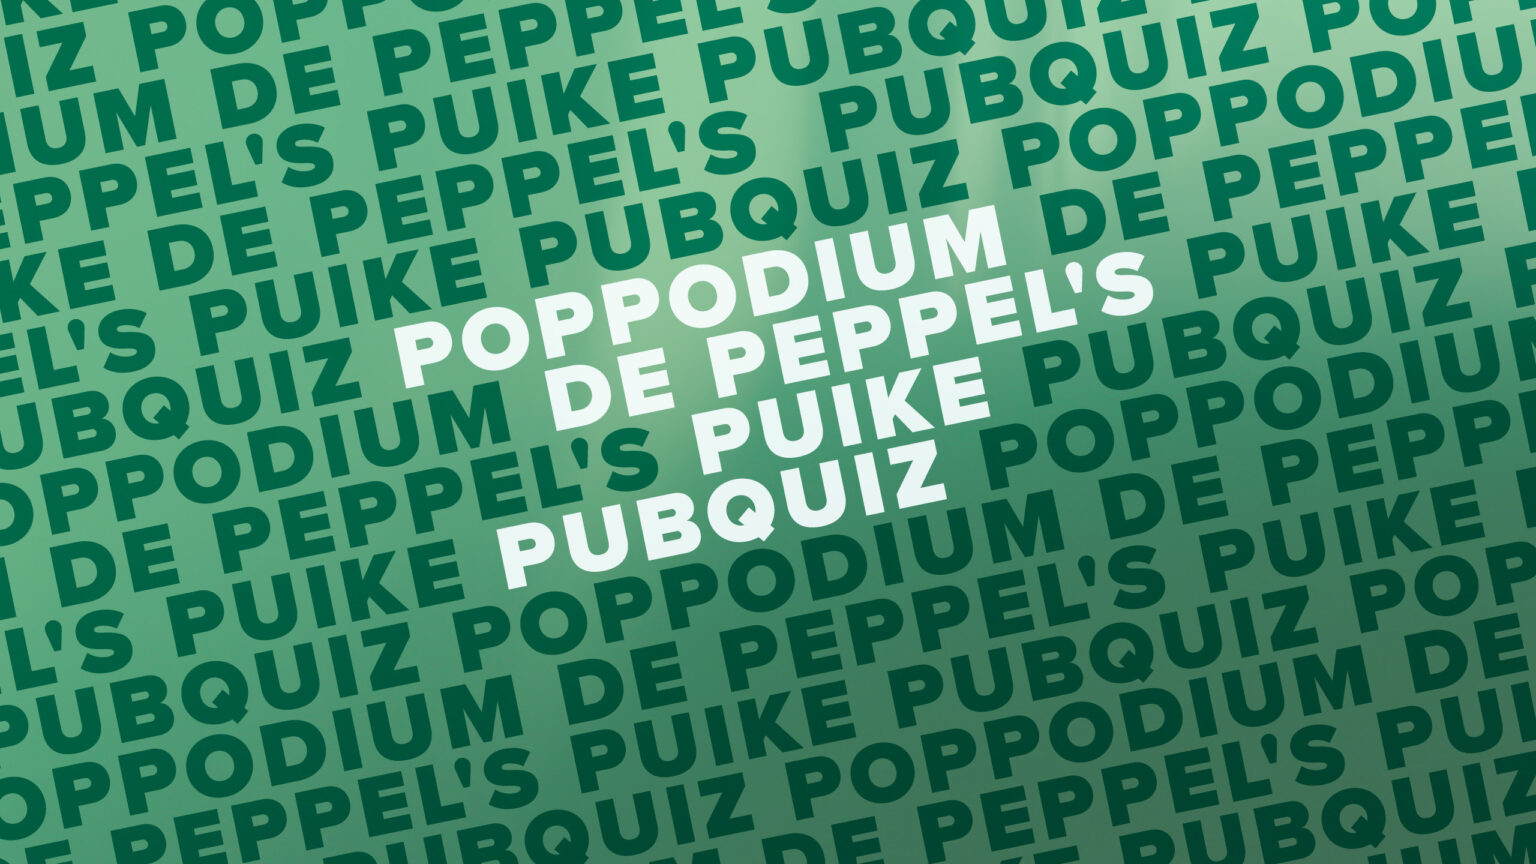 Café Zondag: Poppodium De Peppel’s Puike Pubquiz